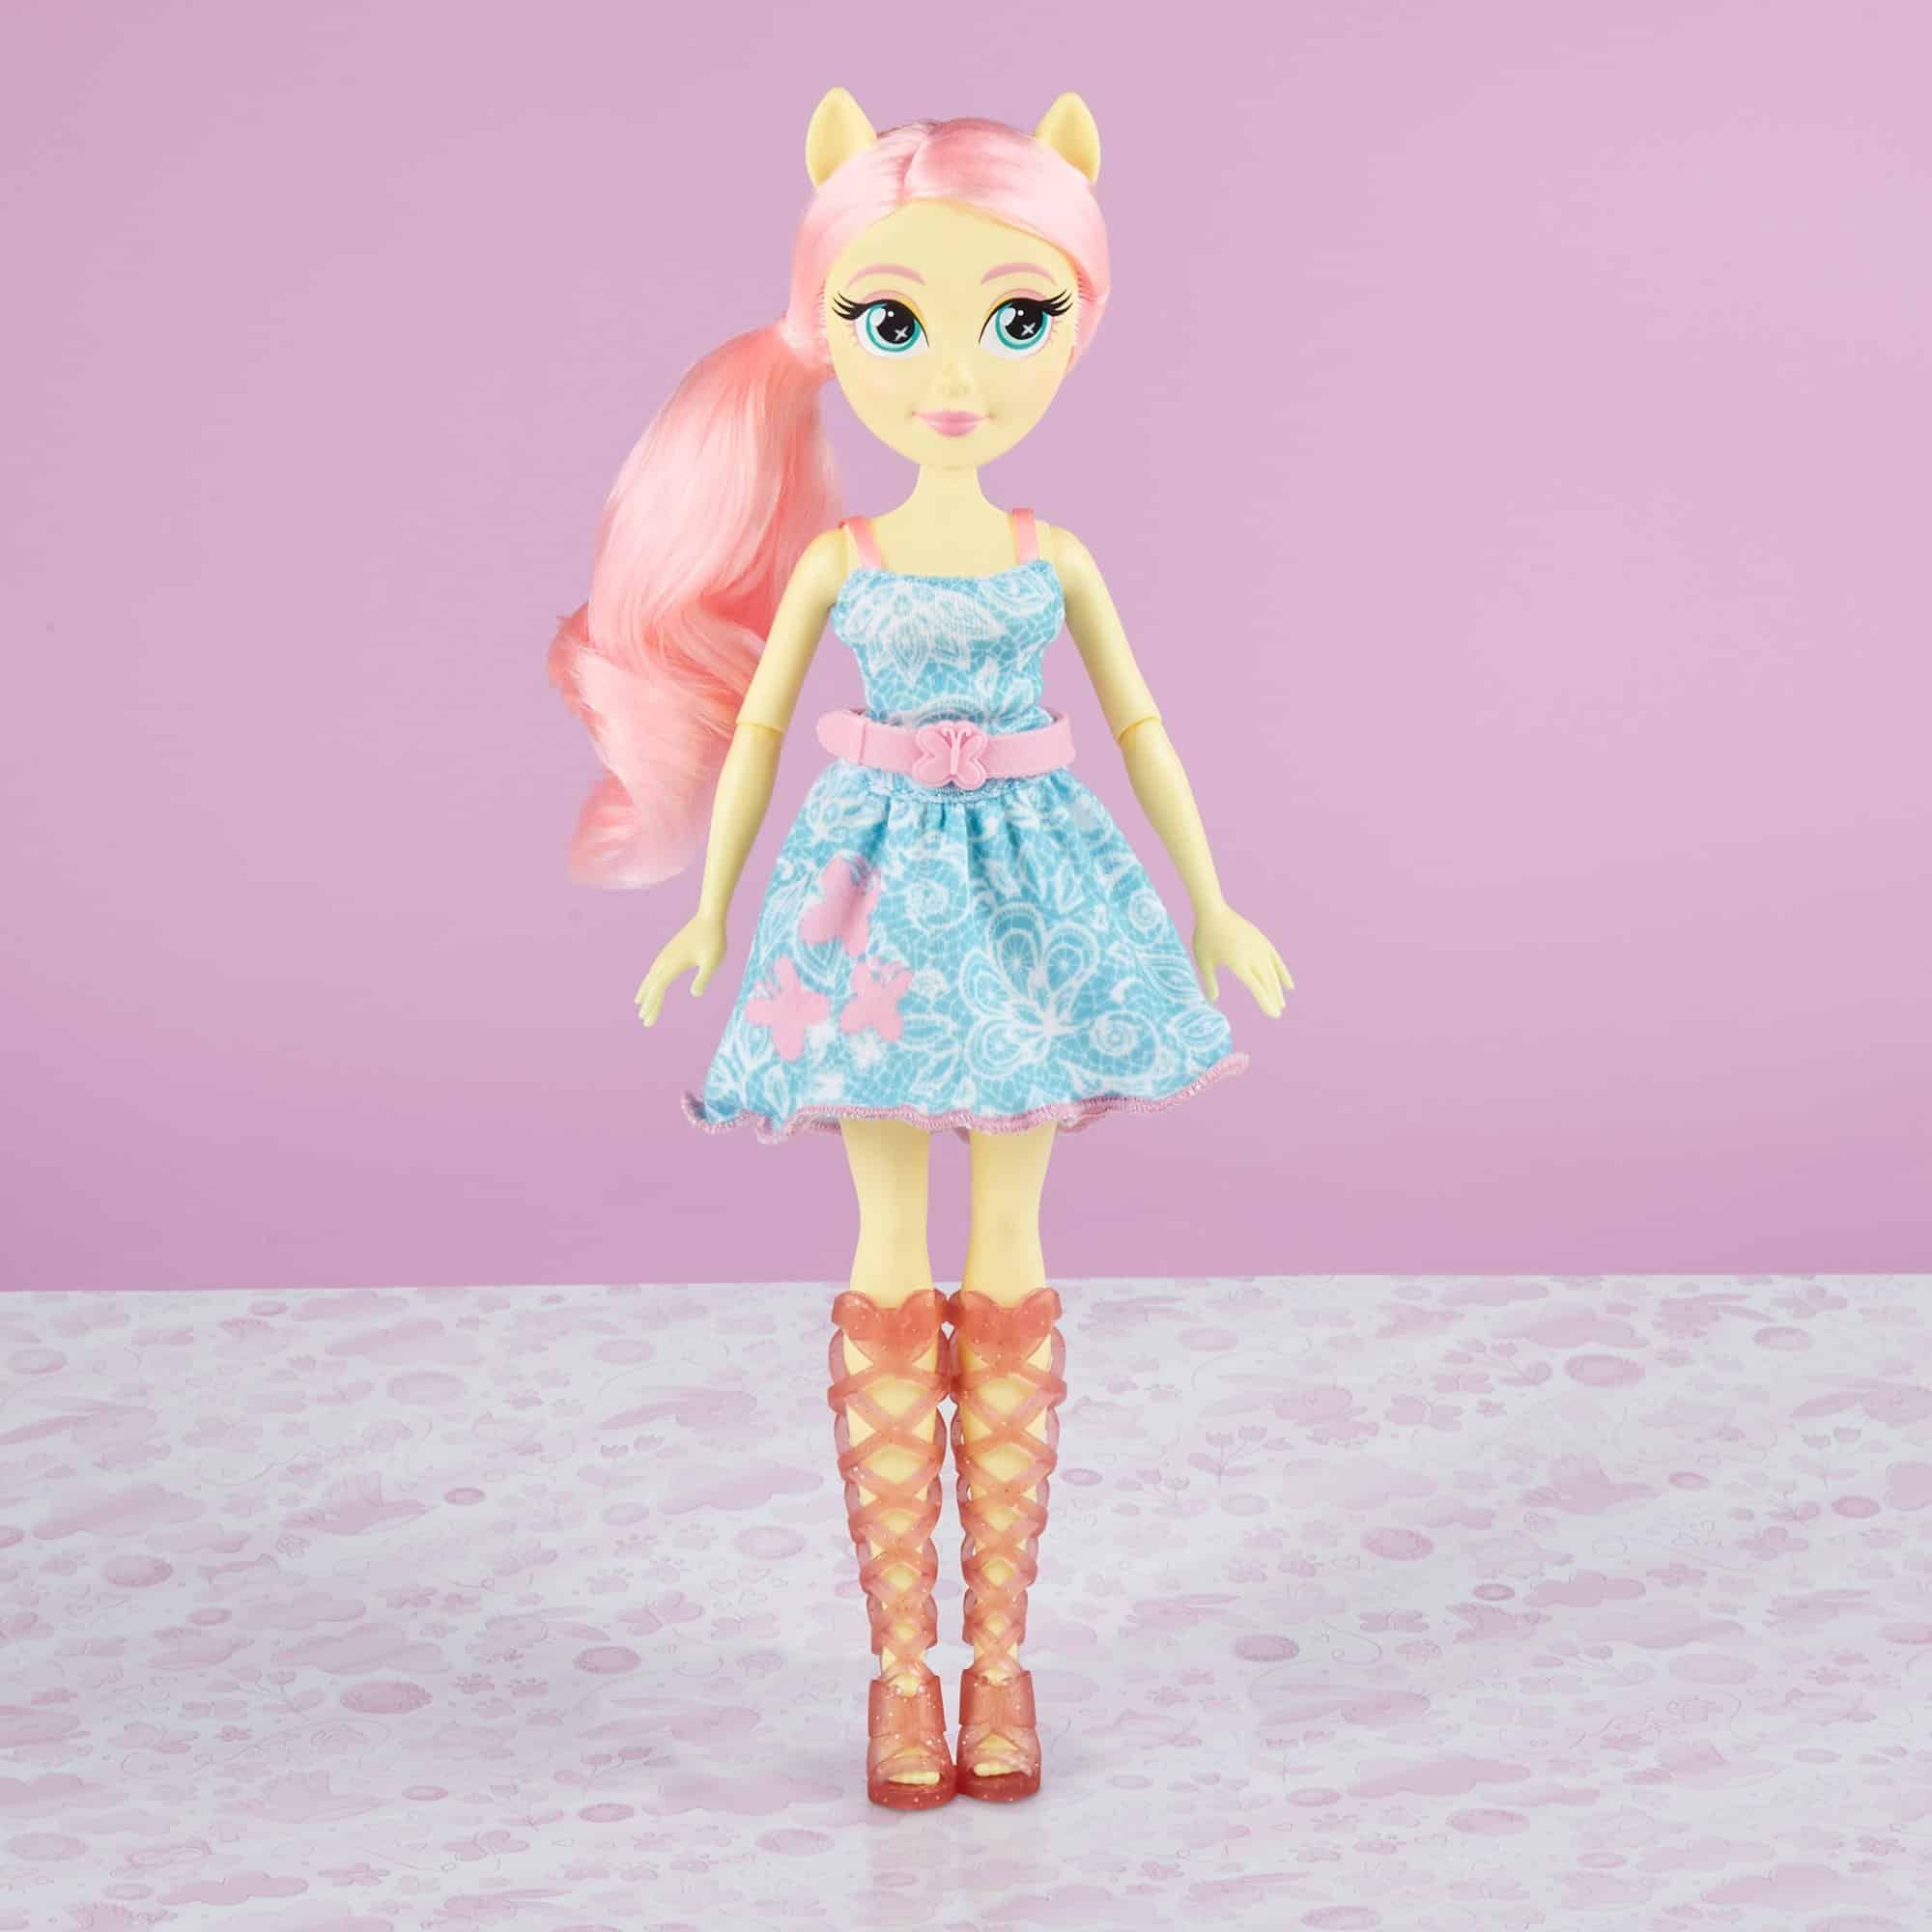 My Little Pony - Equestria Girls Classic Fashion Doll - Fluttershy